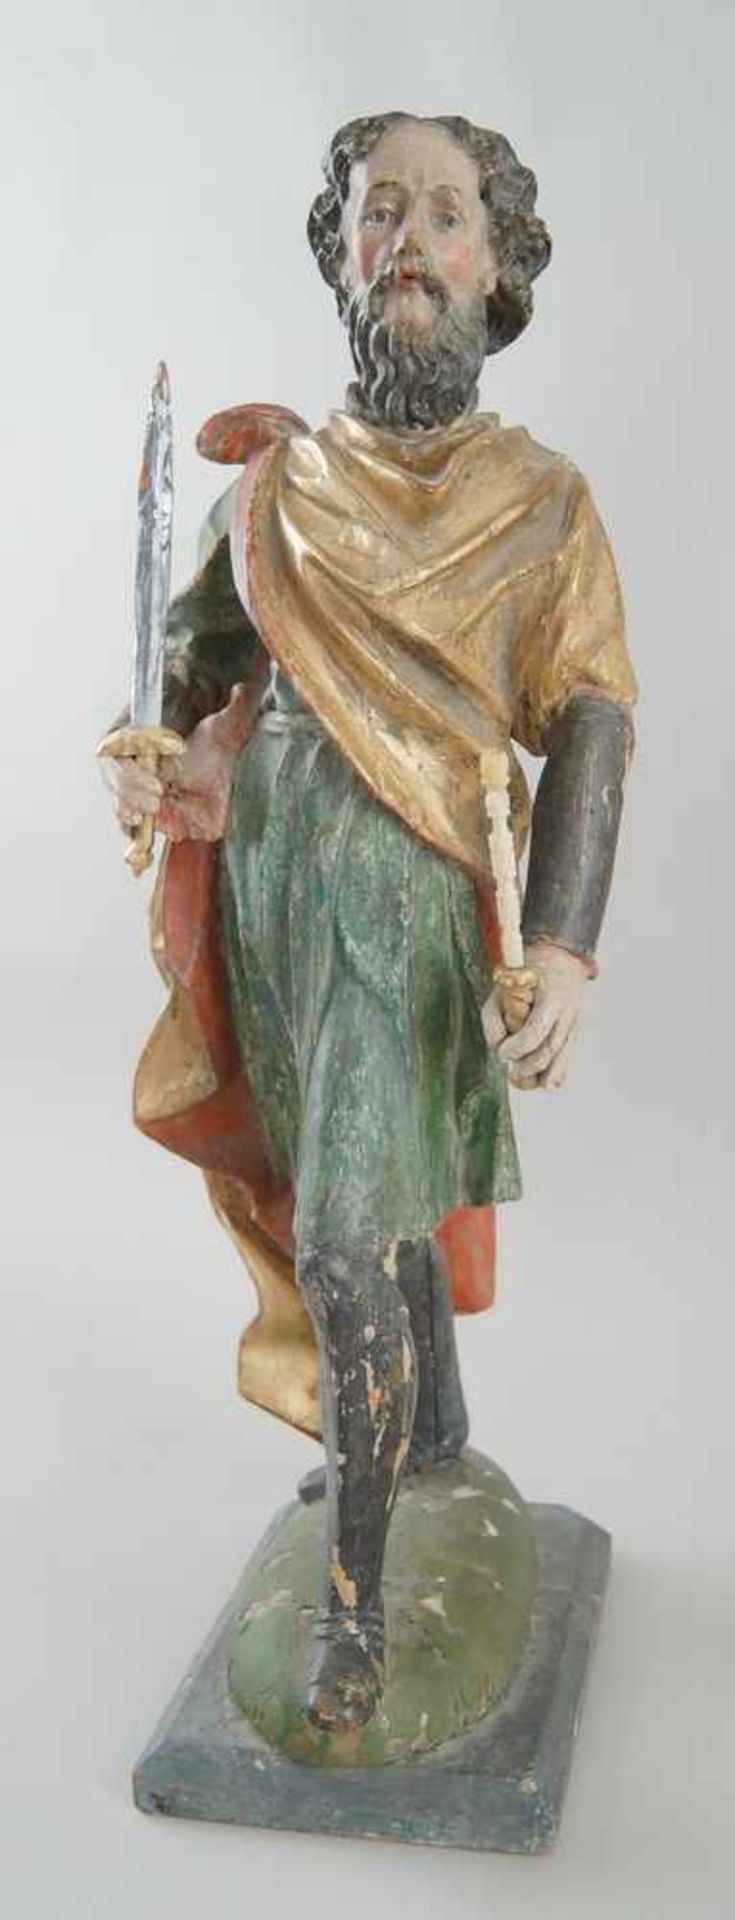 Stehender König, Holz geschnitzte und gefasste Skulptur, 18. JH, H 58 cm- - -24.00 % buyer's premium - Bild 3 aus 7